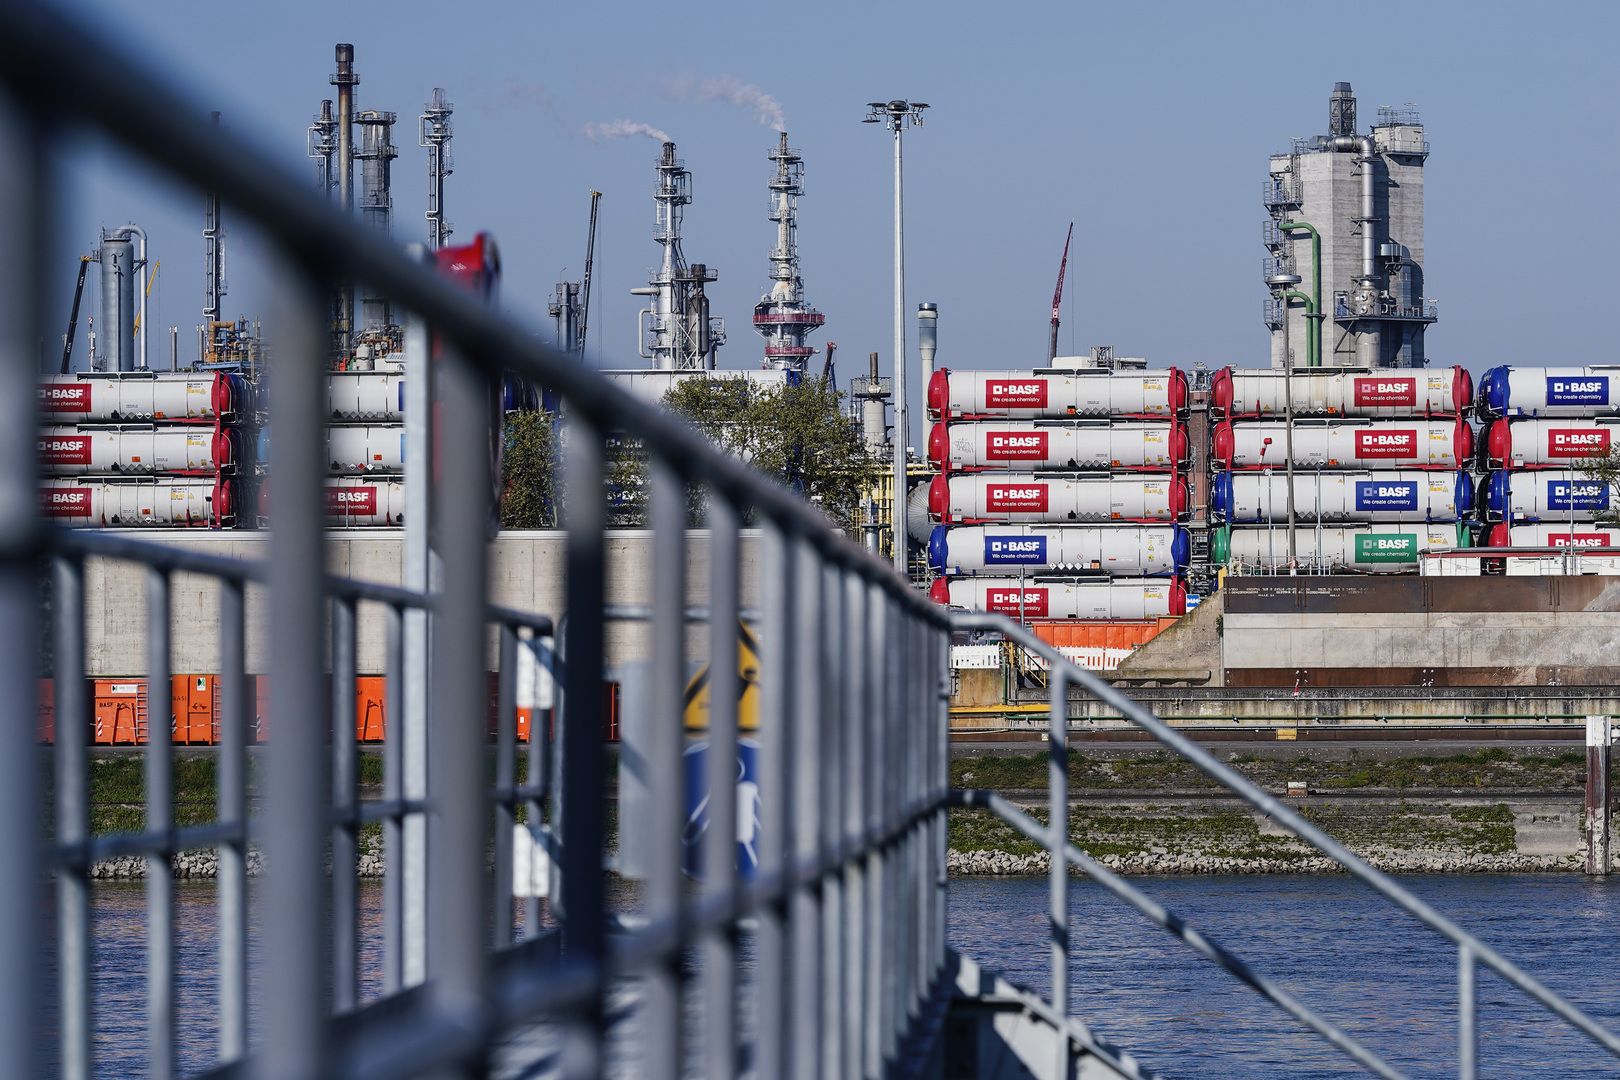 إيطاليا تؤكد عدم دفع ثمن الغاز الروسي بالروبل